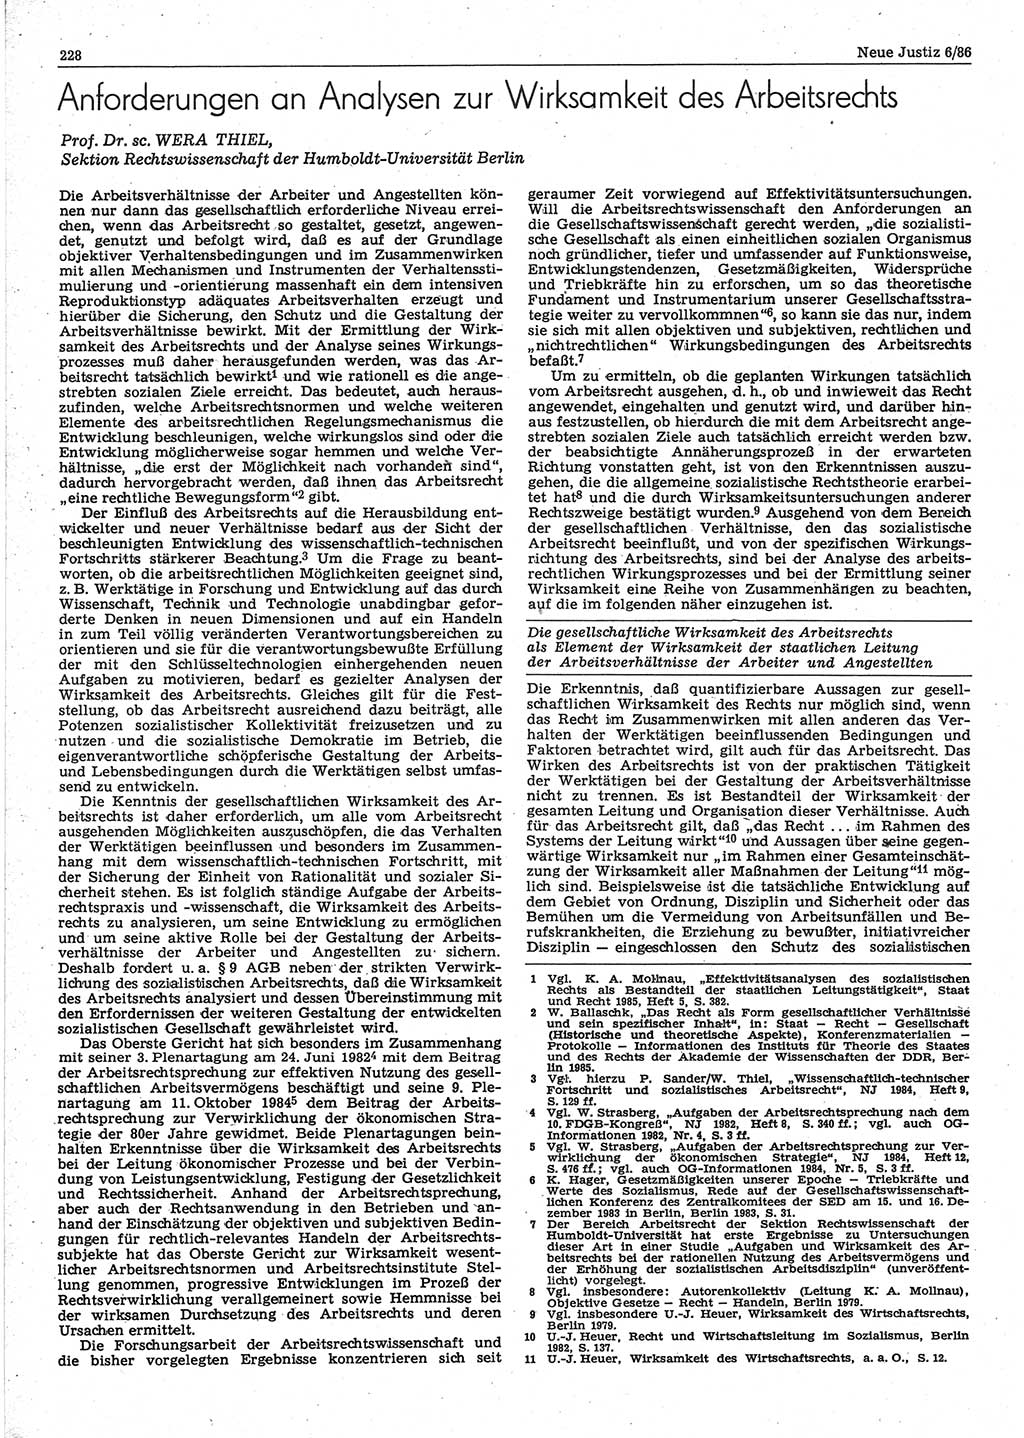 Neue Justiz (NJ), Zeitschrift für sozialistisches Recht und Gesetzlichkeit [Deutsche Demokratische Republik (DDR)], 40. Jahrgang 1986, Seite 228 (NJ DDR 1986, S. 228)